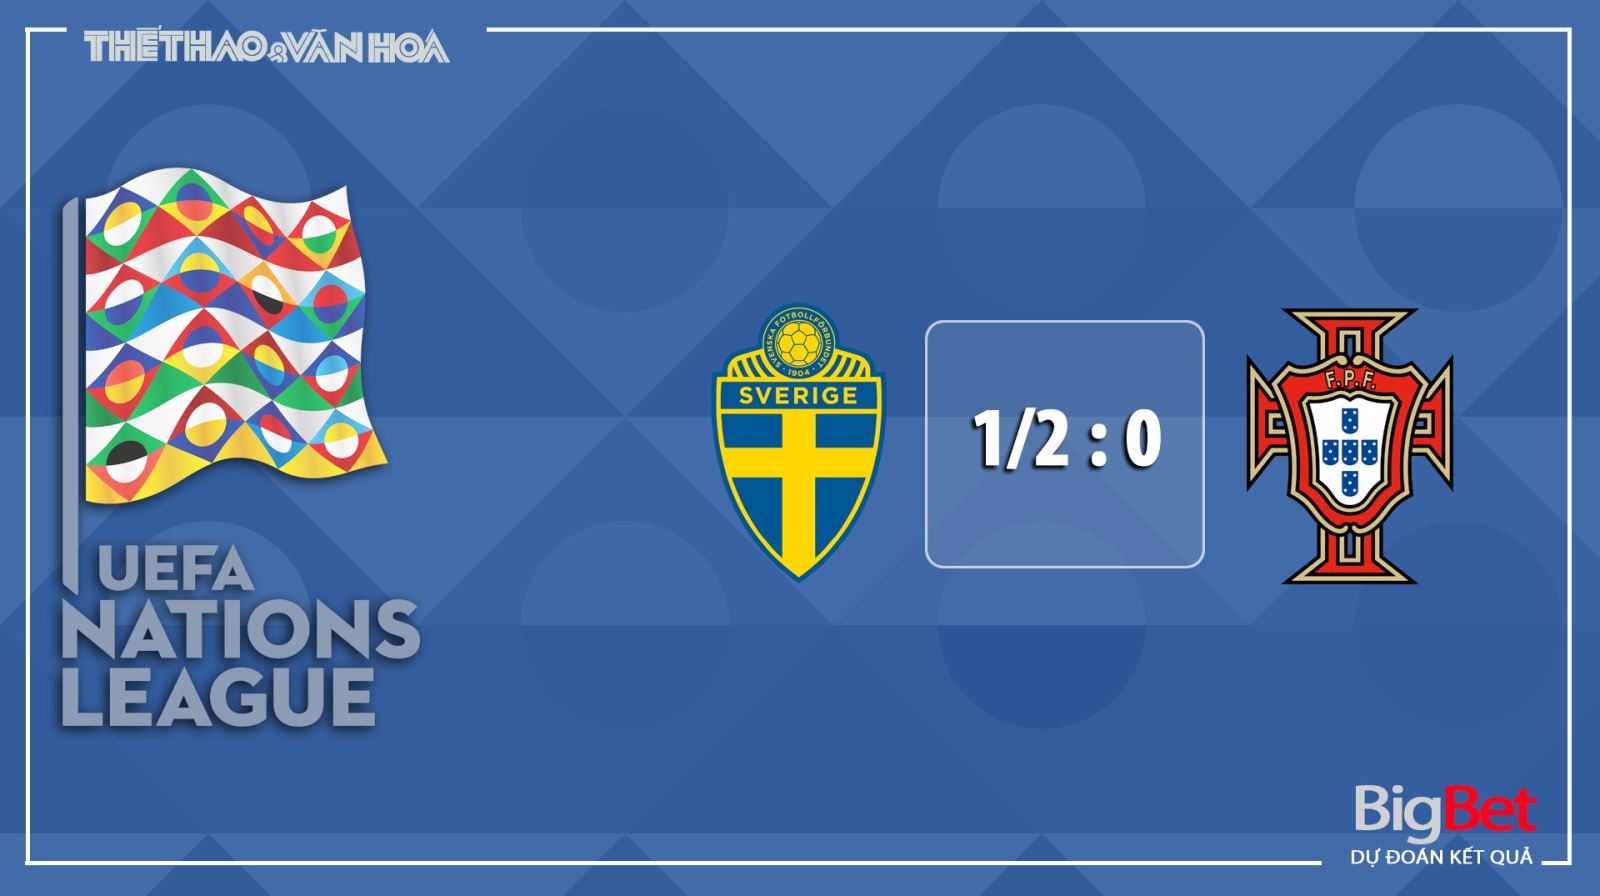 Thụy Điển vs Bồ Đào Nha, Thuỵ Điển, Bồ Đào Nha, nhận định bóng đá bóng đá, nhận định bóng đá Thụy Điển vs Bồ Đào Nha, kèo bóng đá, trực tiếp bóng đá